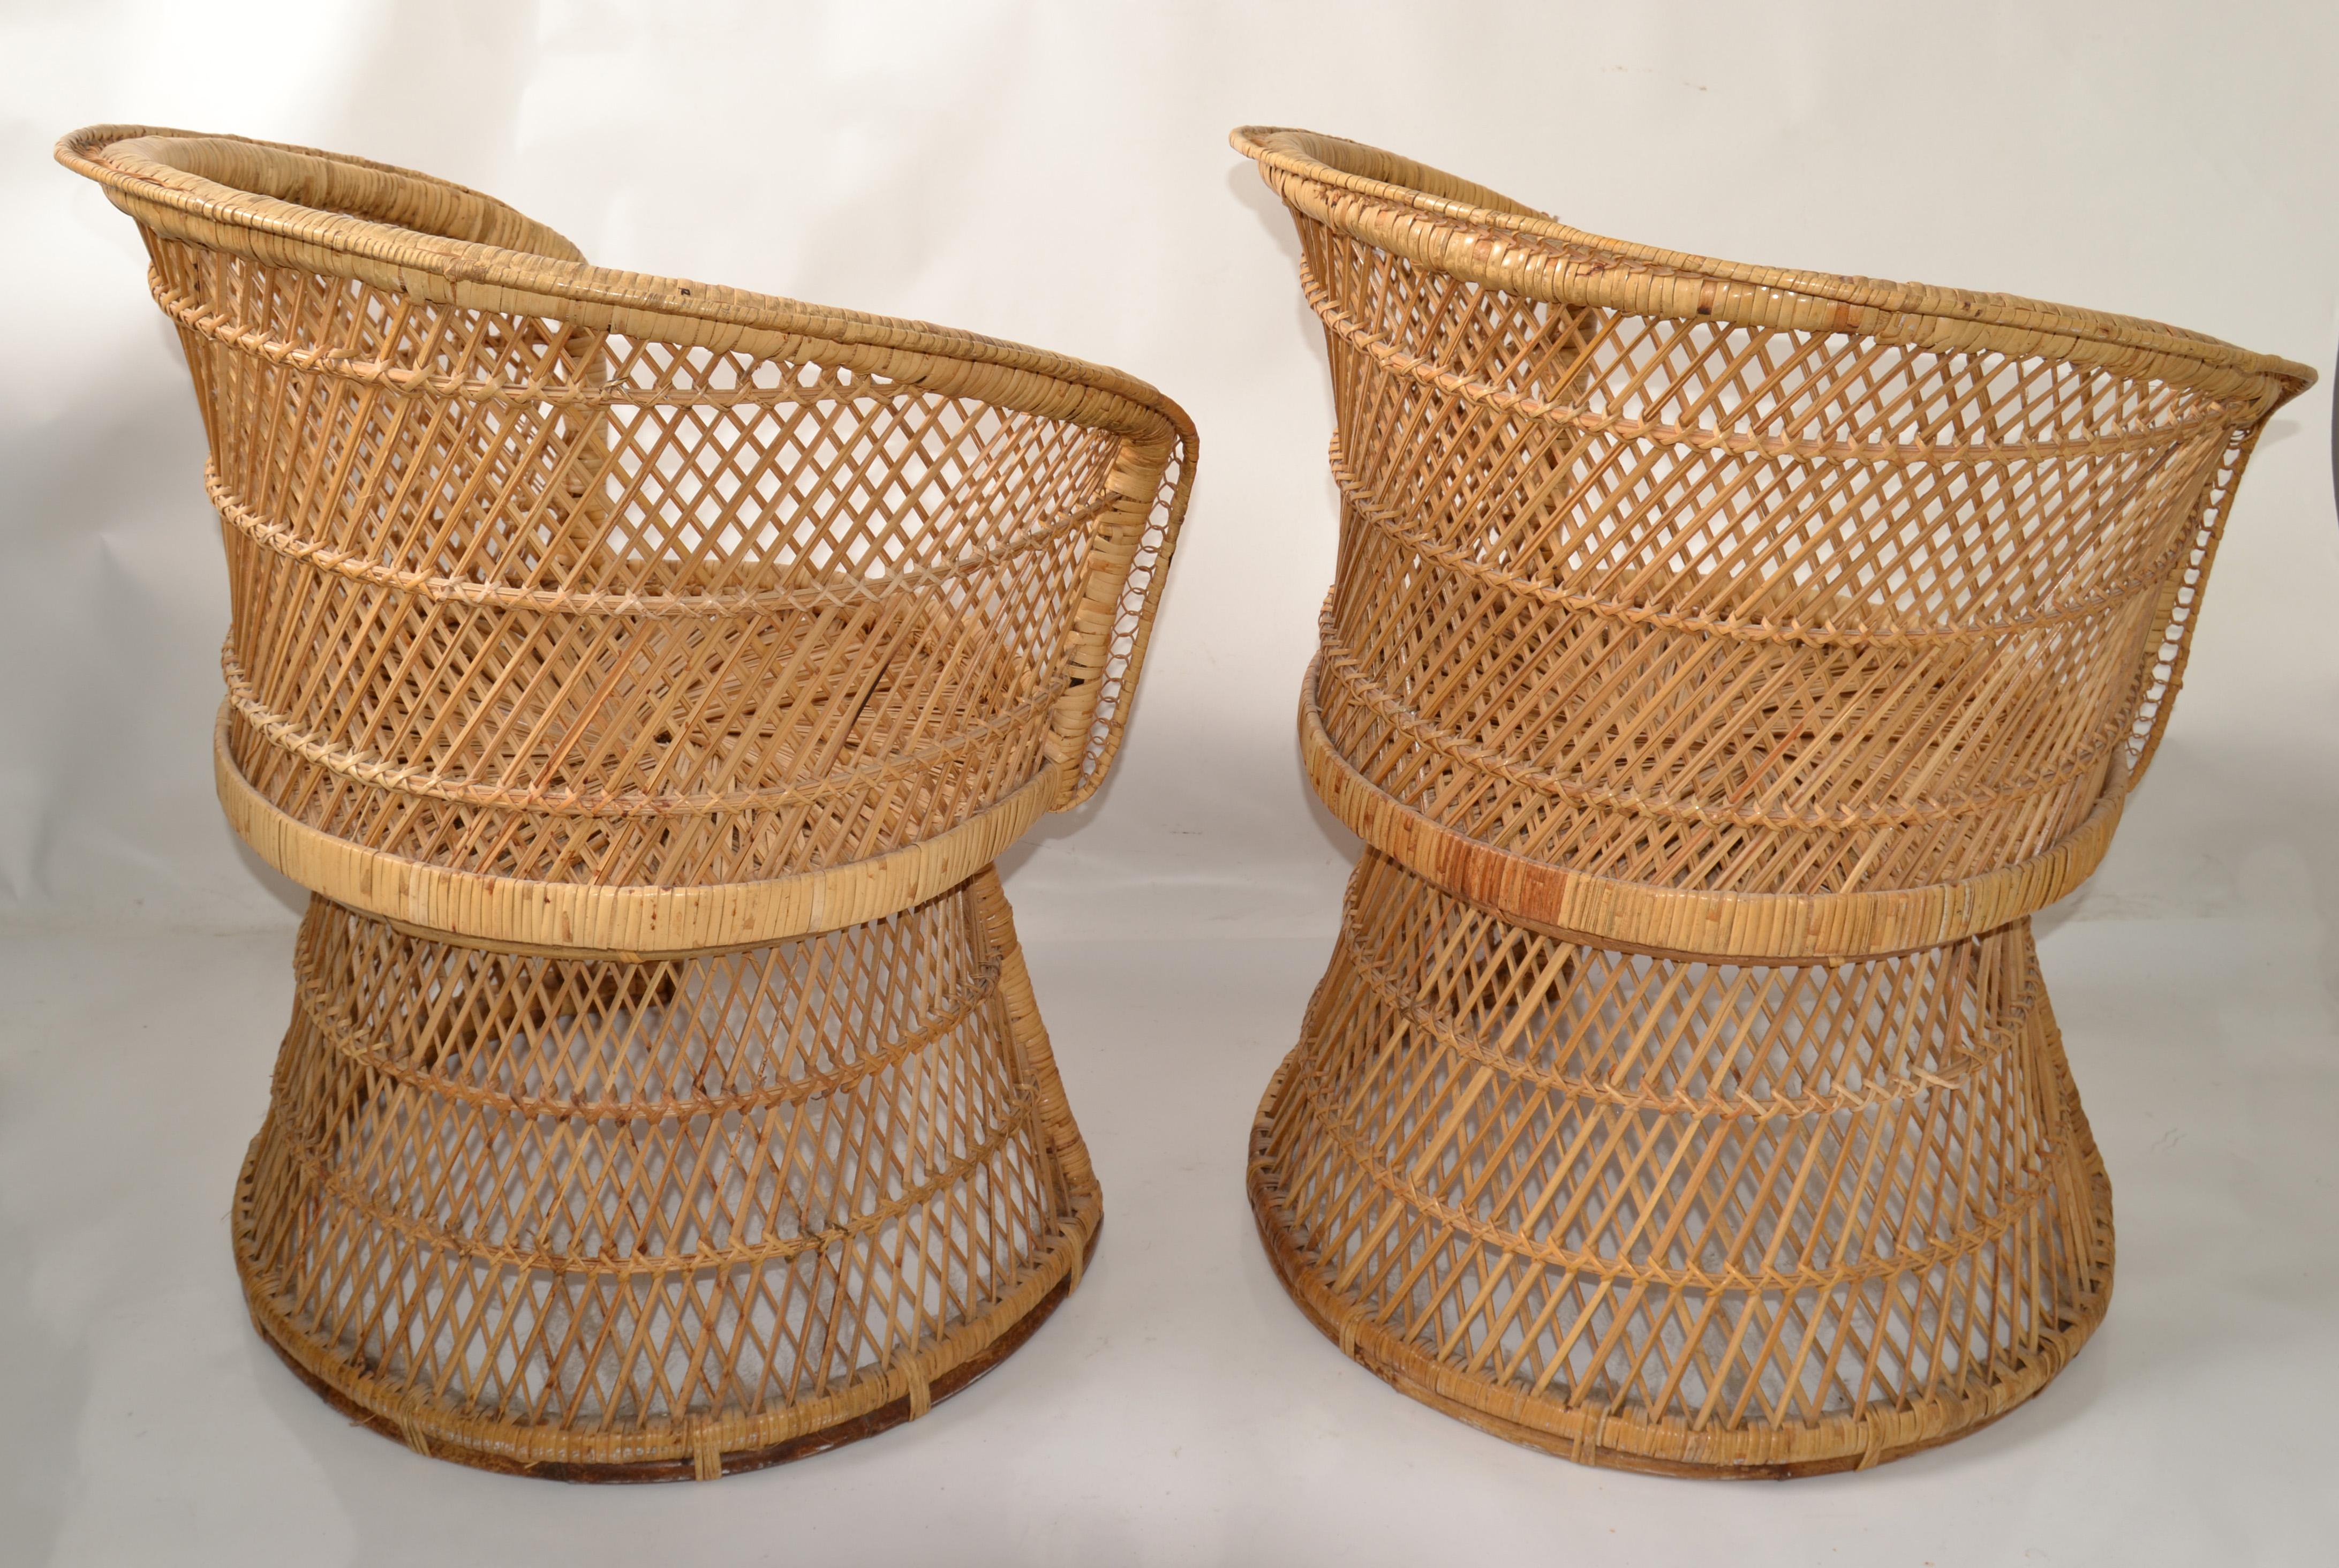 Fait main Ensemble de 2 fauteuils vintage en rotin et bambou de style chinoiserie tissés et fabriqués à la main en vente